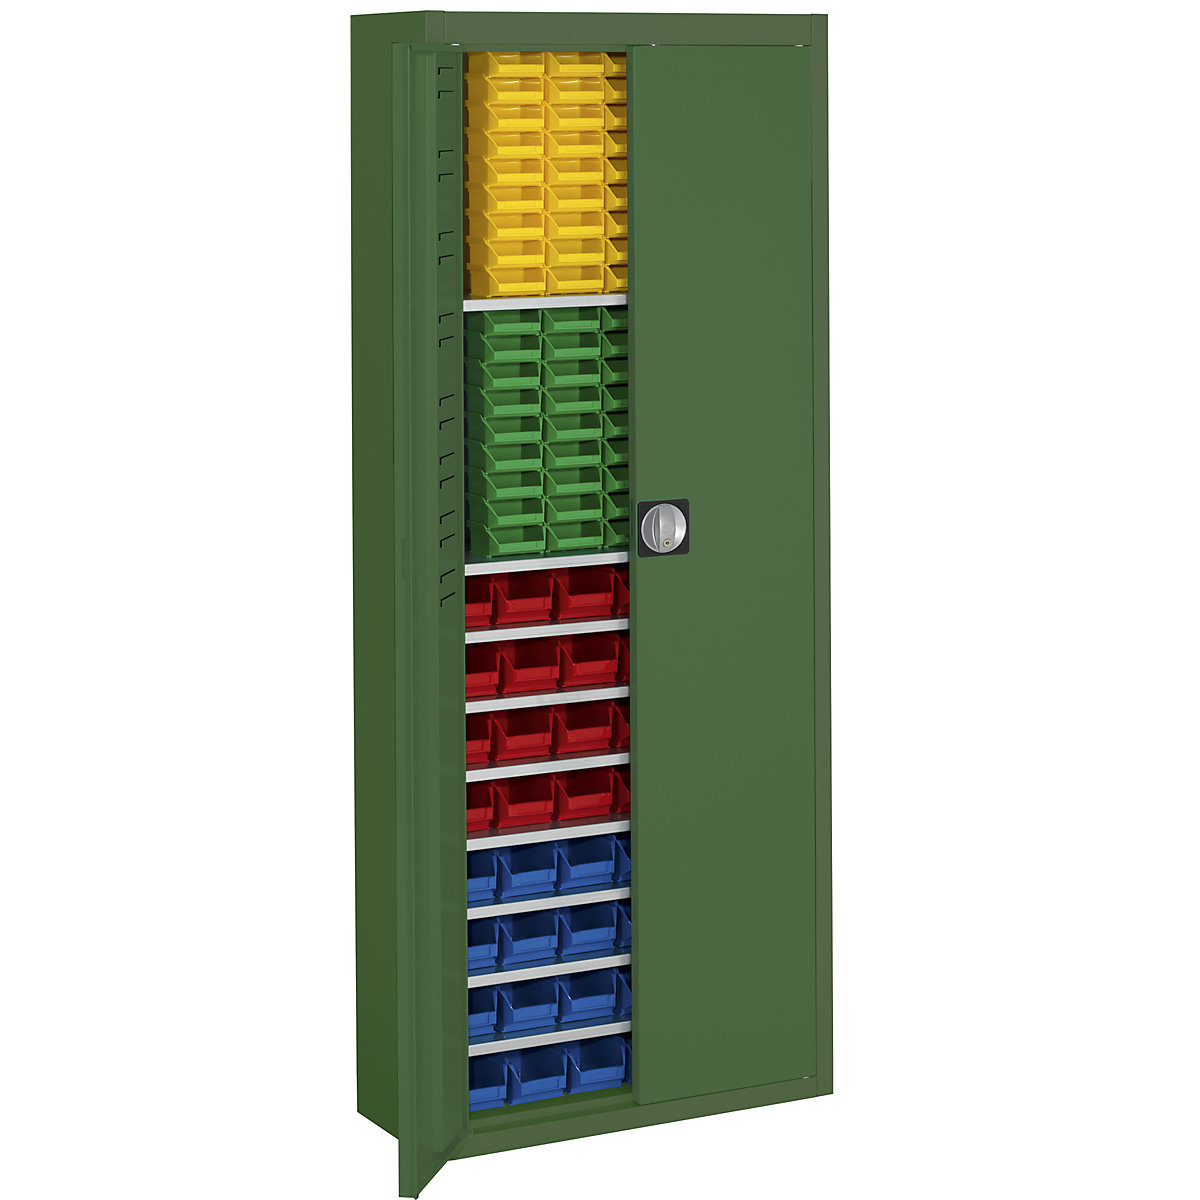 Armario-almacén con cajas visualizables – mauser, H x A x P 1740 x 680 x 280 mm, monocolor, verde, 138 cajas-15